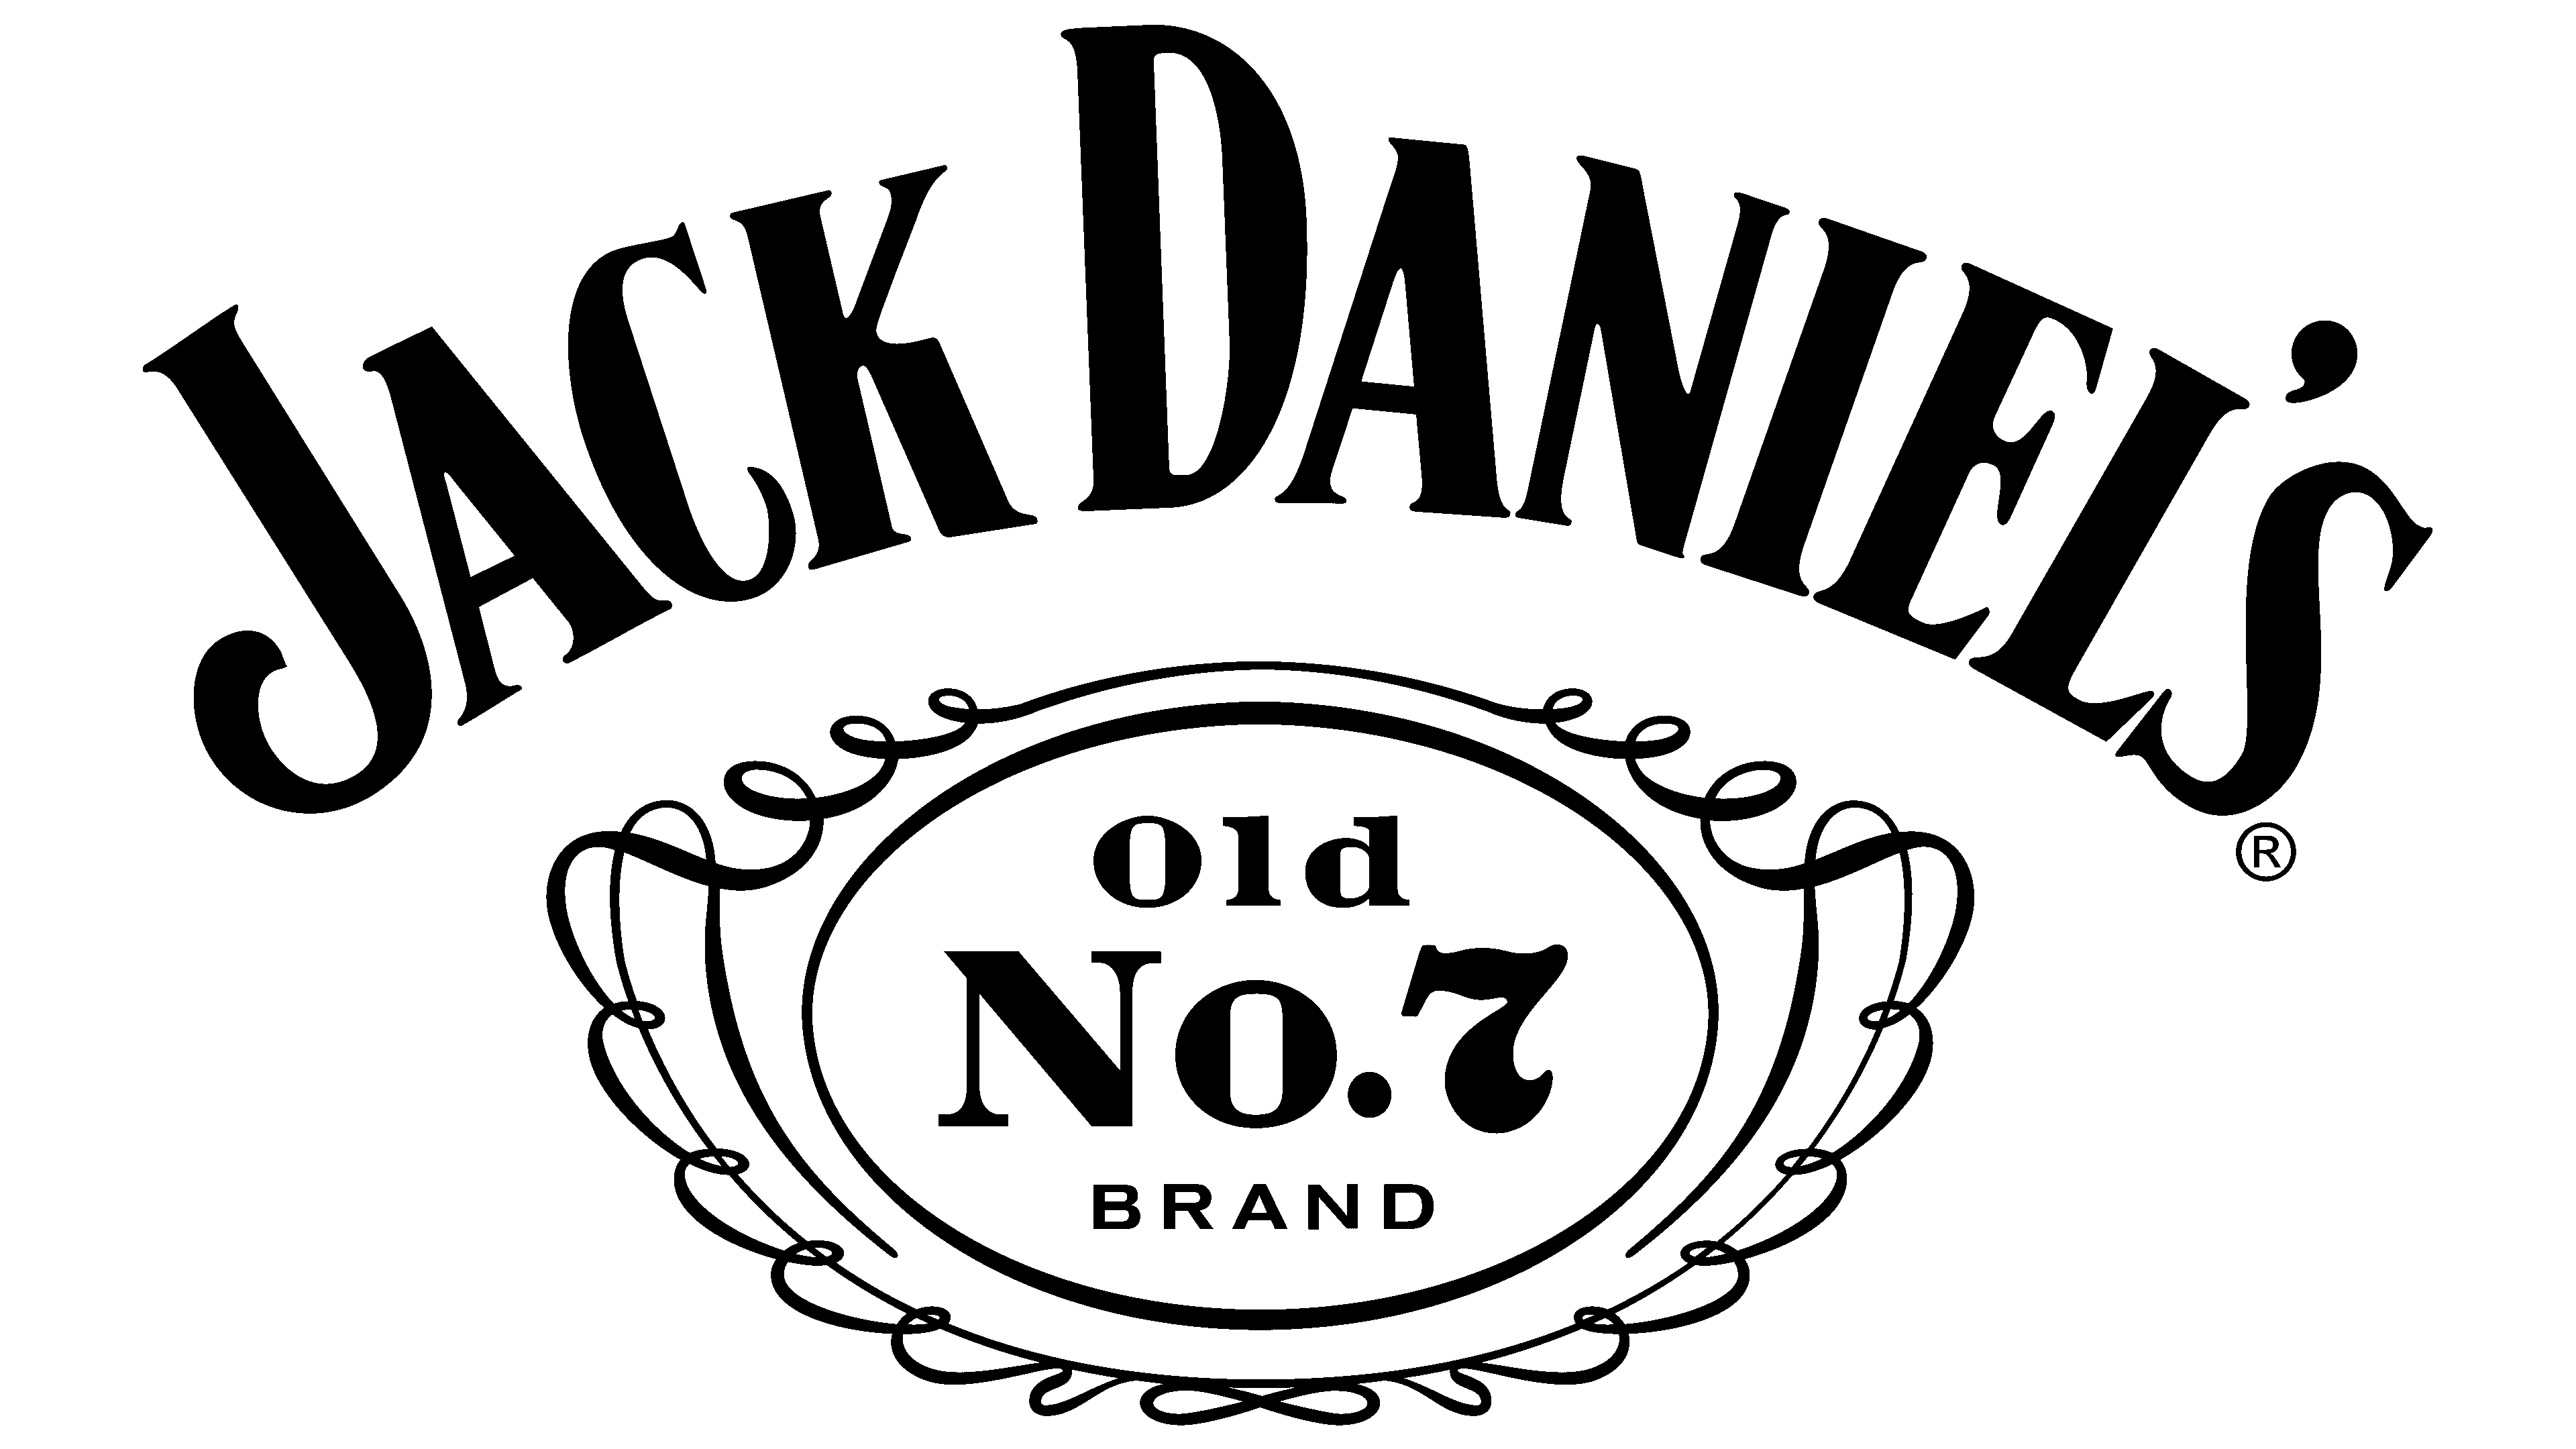 Jack Daniel’s Flavors